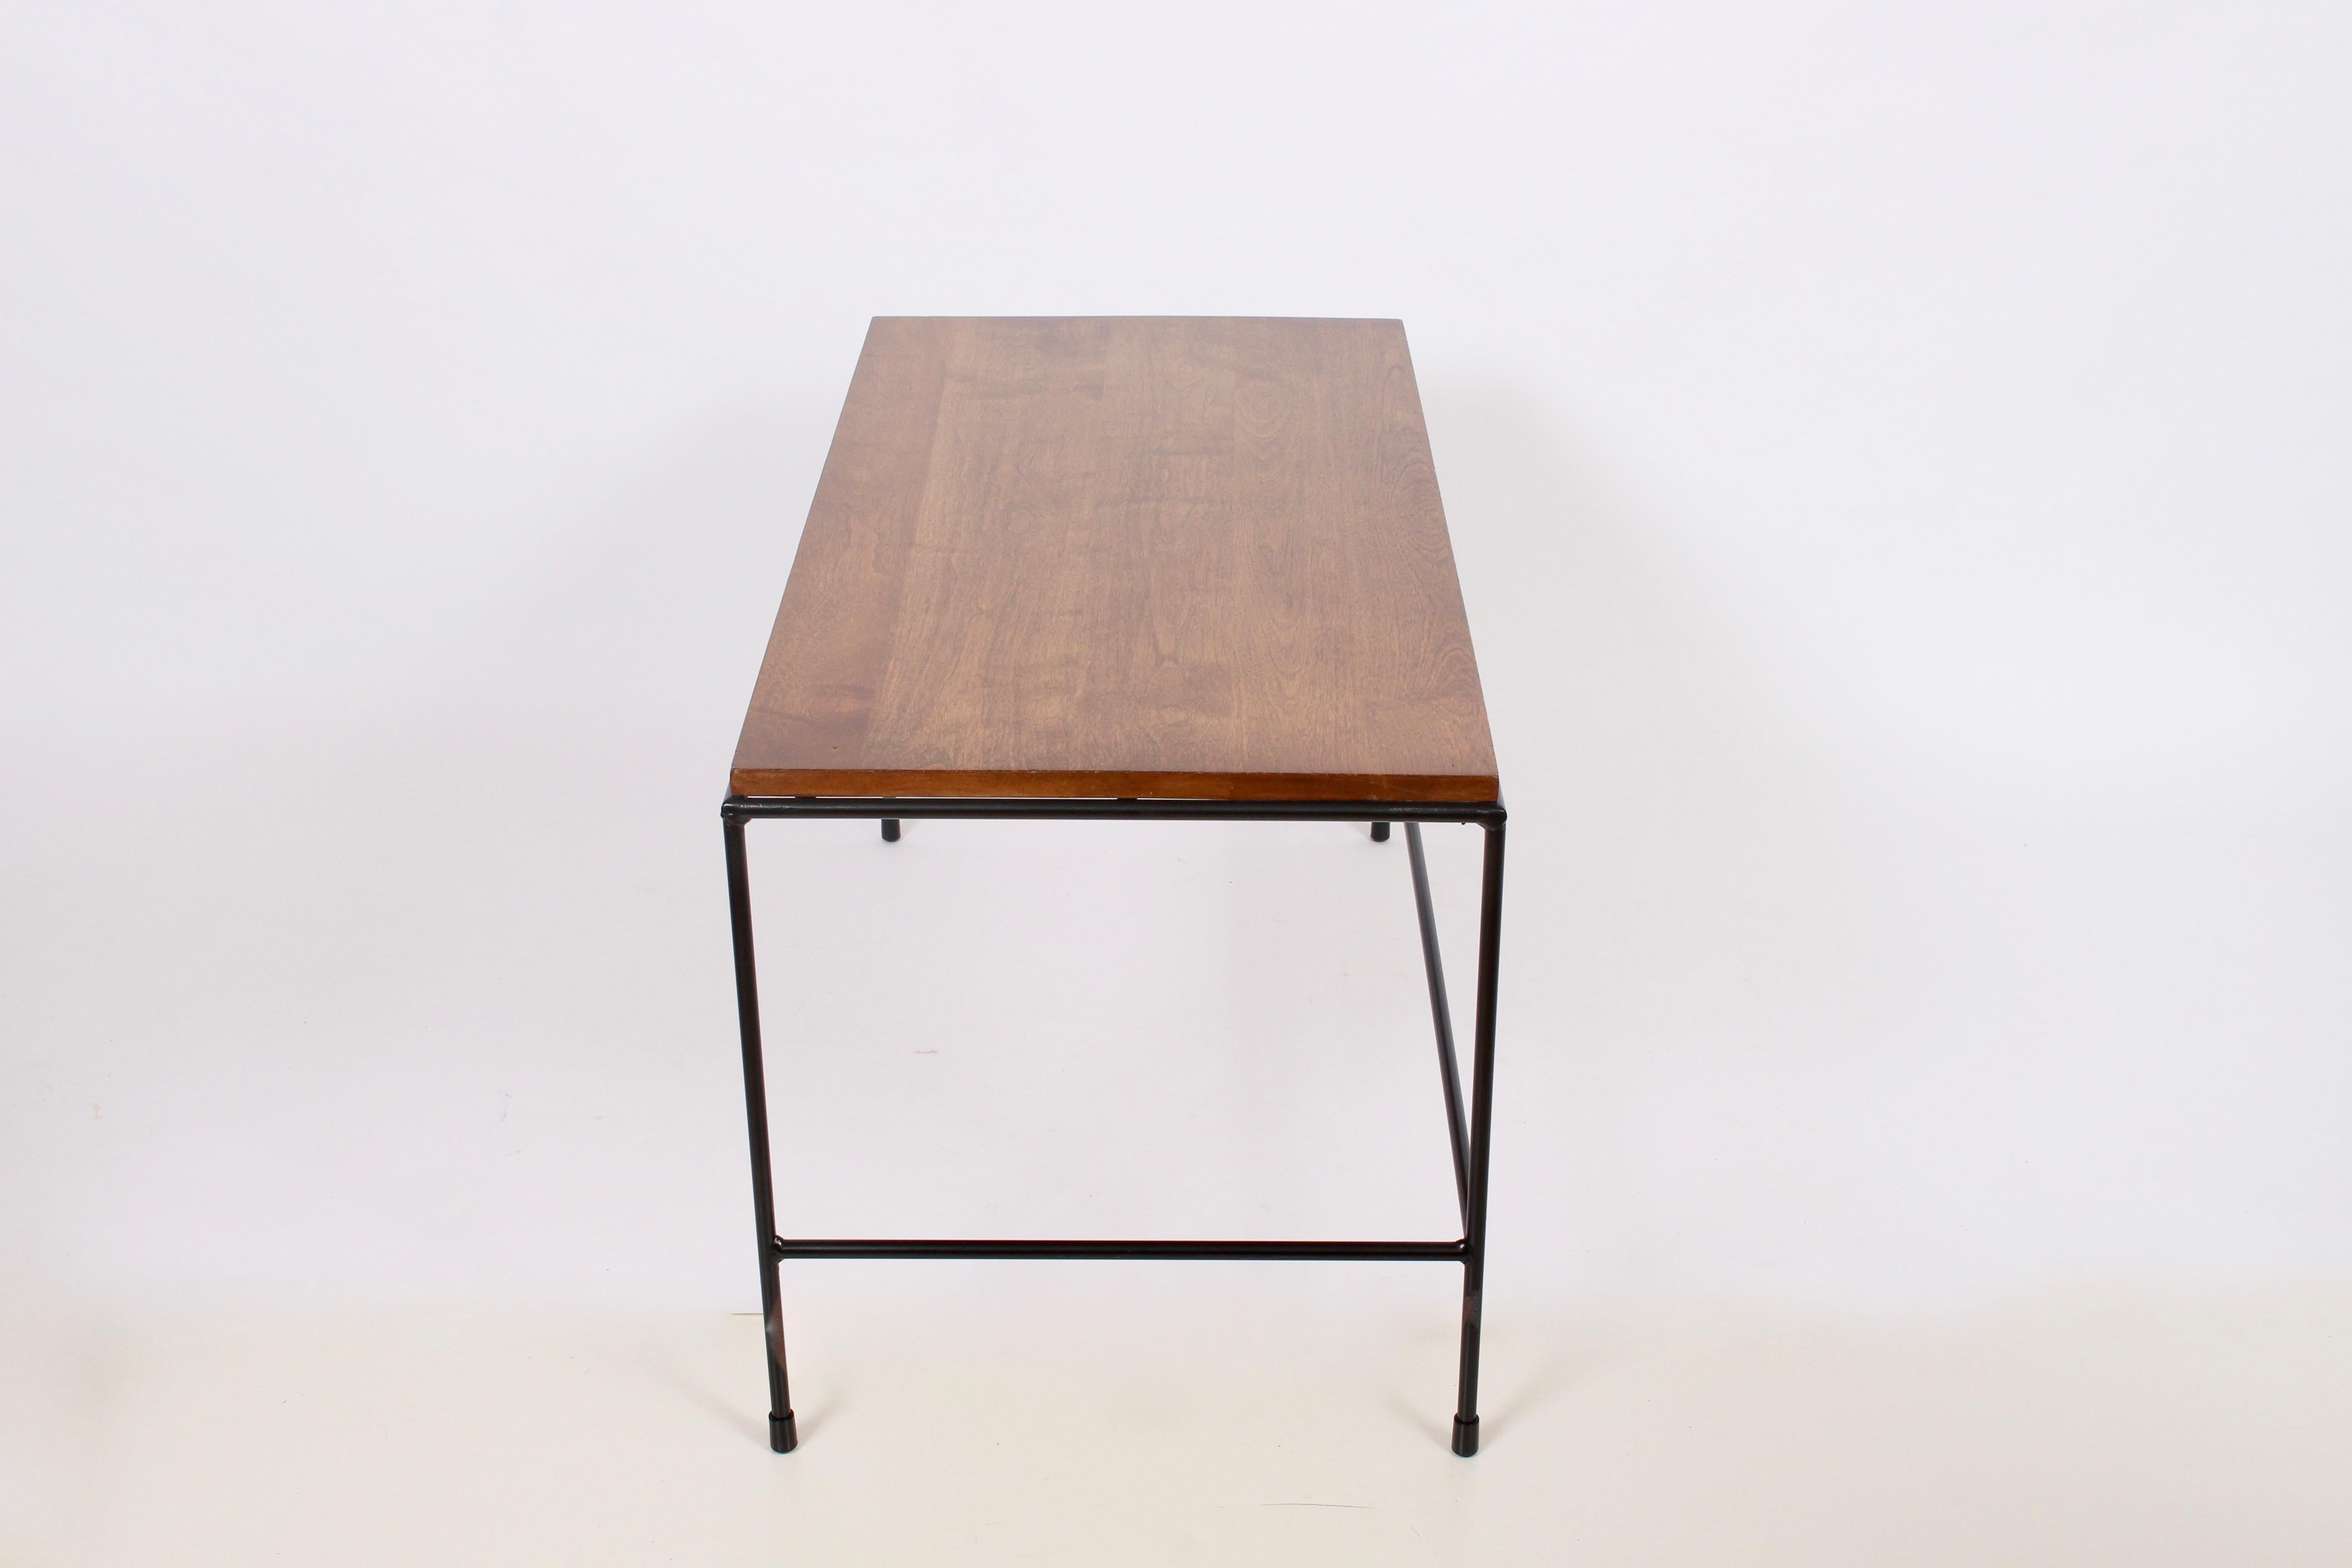 Early Paul McCobb Winchendon Planner Group high Coffee Table, Bench. Bout de lit, table de nuit, années 1950.  Elle se compose d'un cadre rectangulaire robuste en fer laqué noir et d'une surface en bouleau massif avec une finition Tabac. Intemporel.